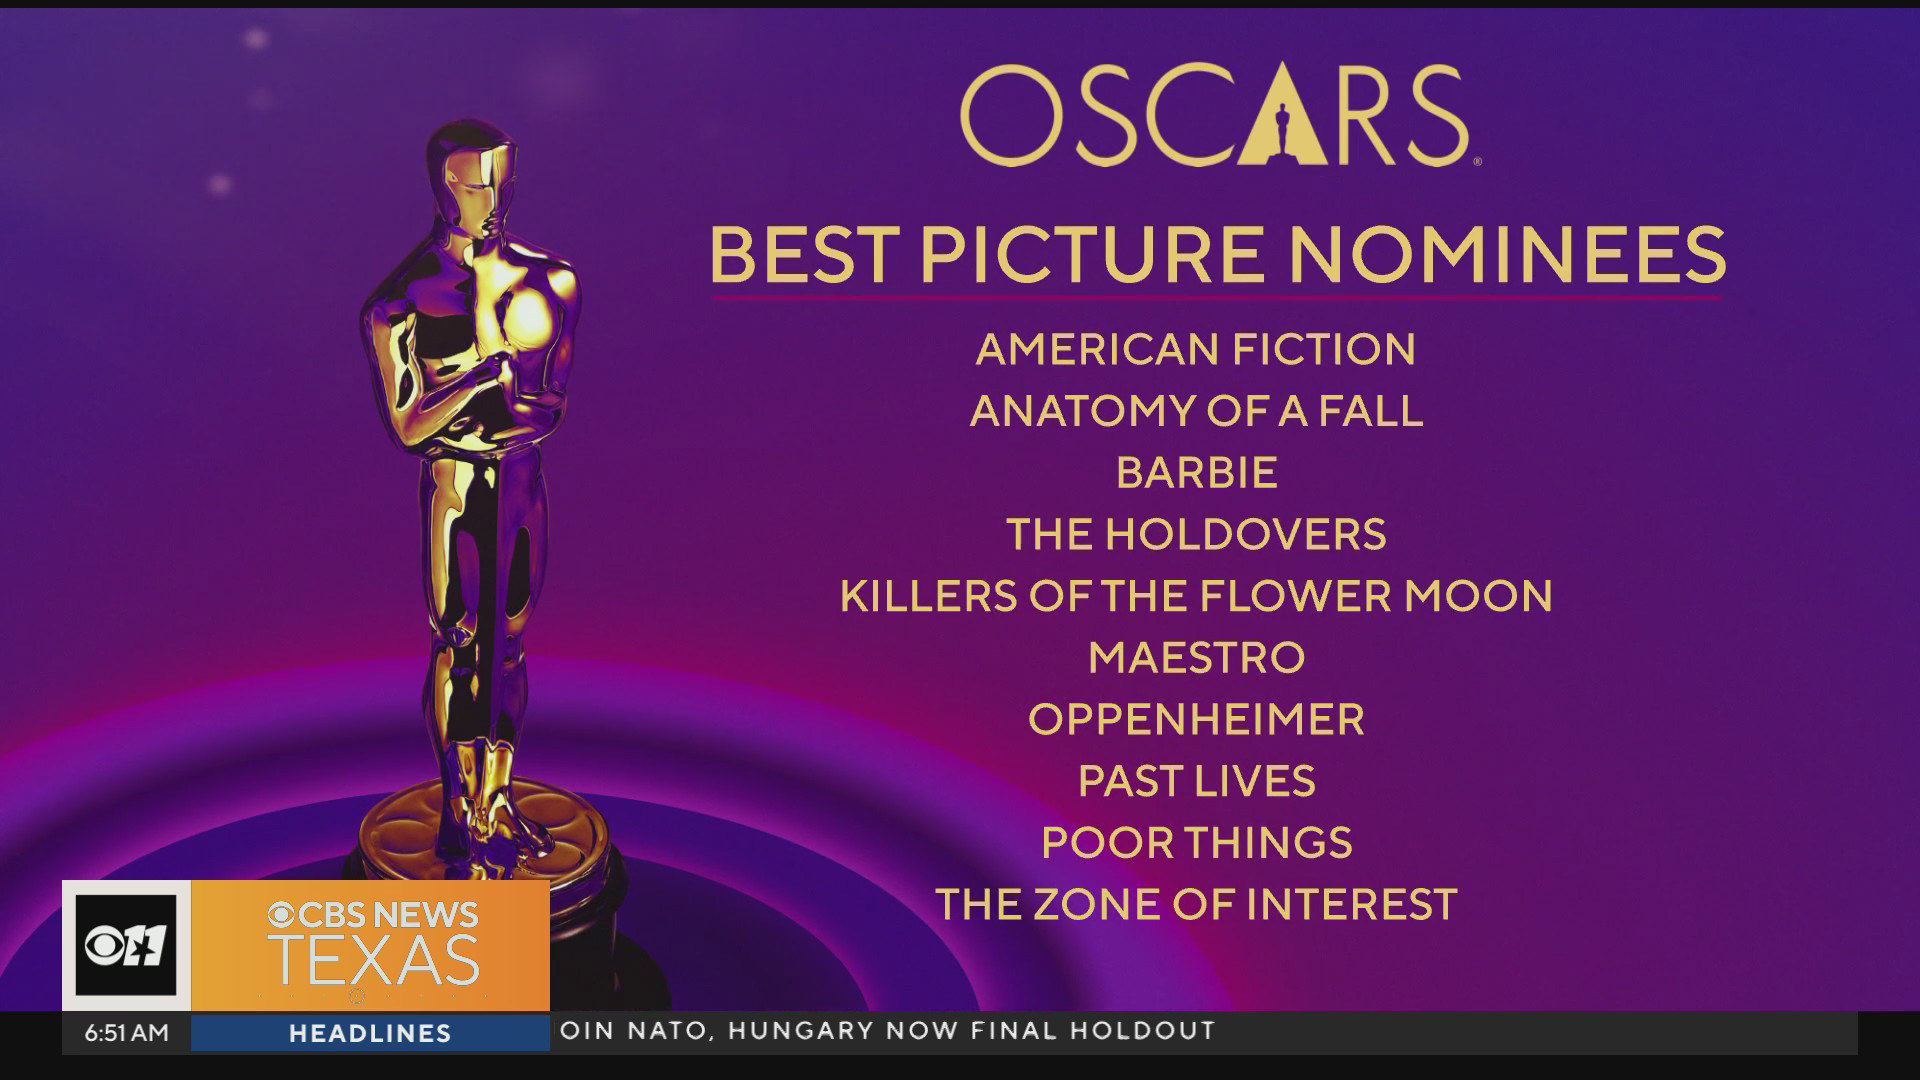 Academy Awards announce Oscars nominees